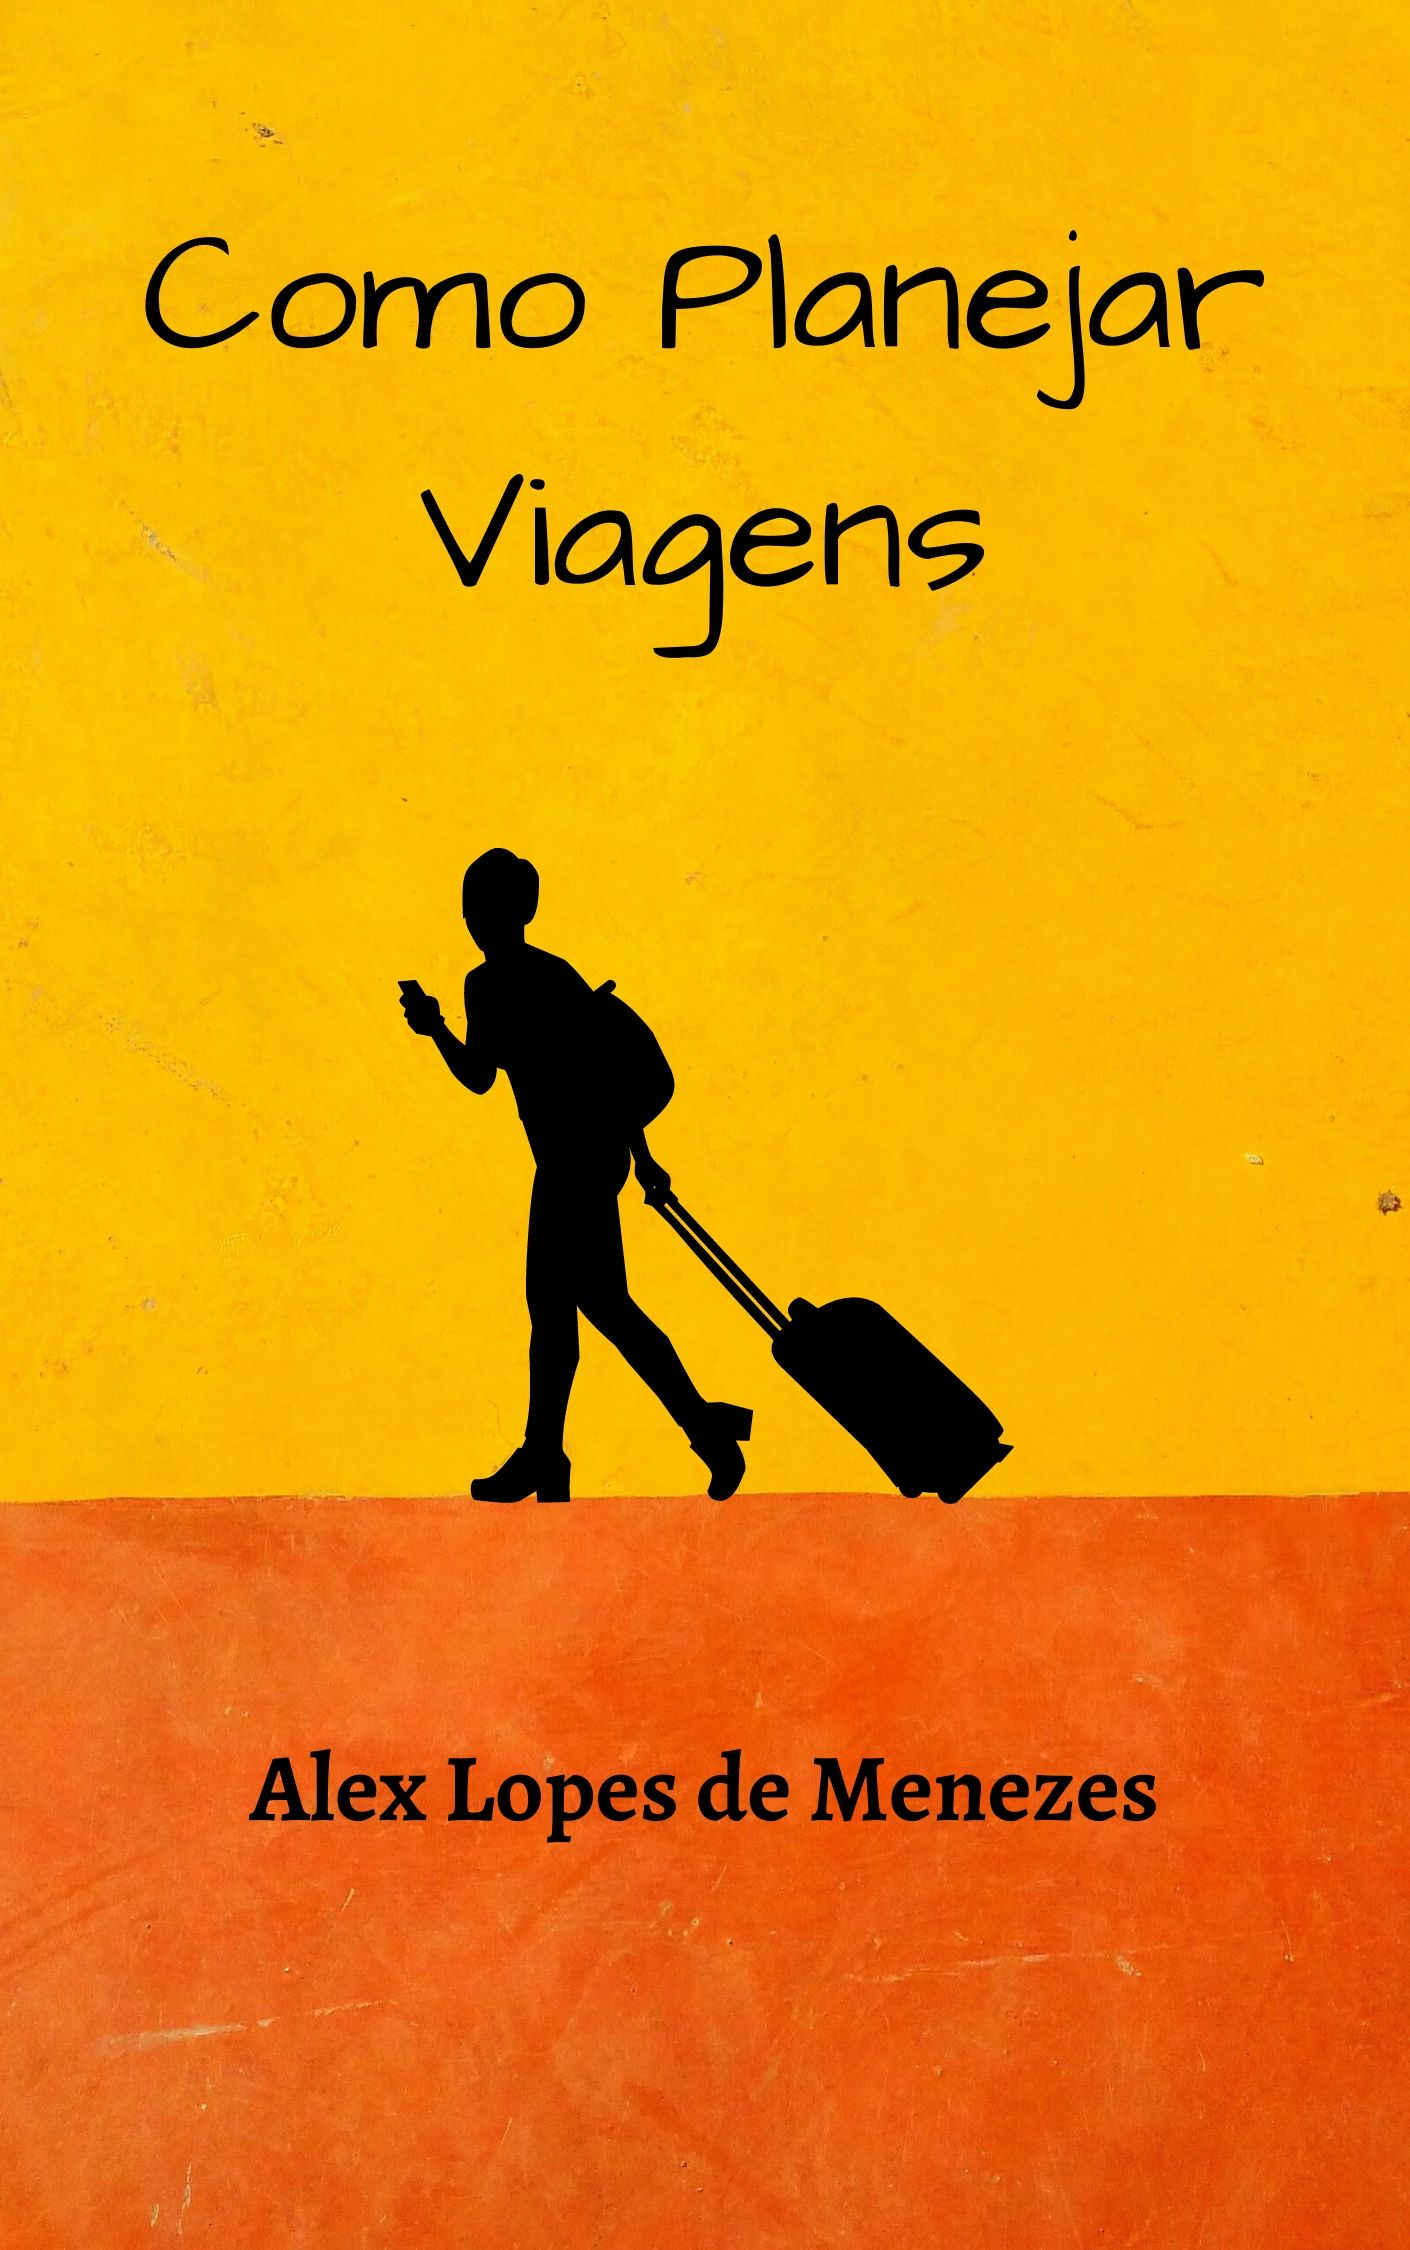 Capa do livro como planejar viagens, em amarelo e laranja, com uma viajante e suas malas